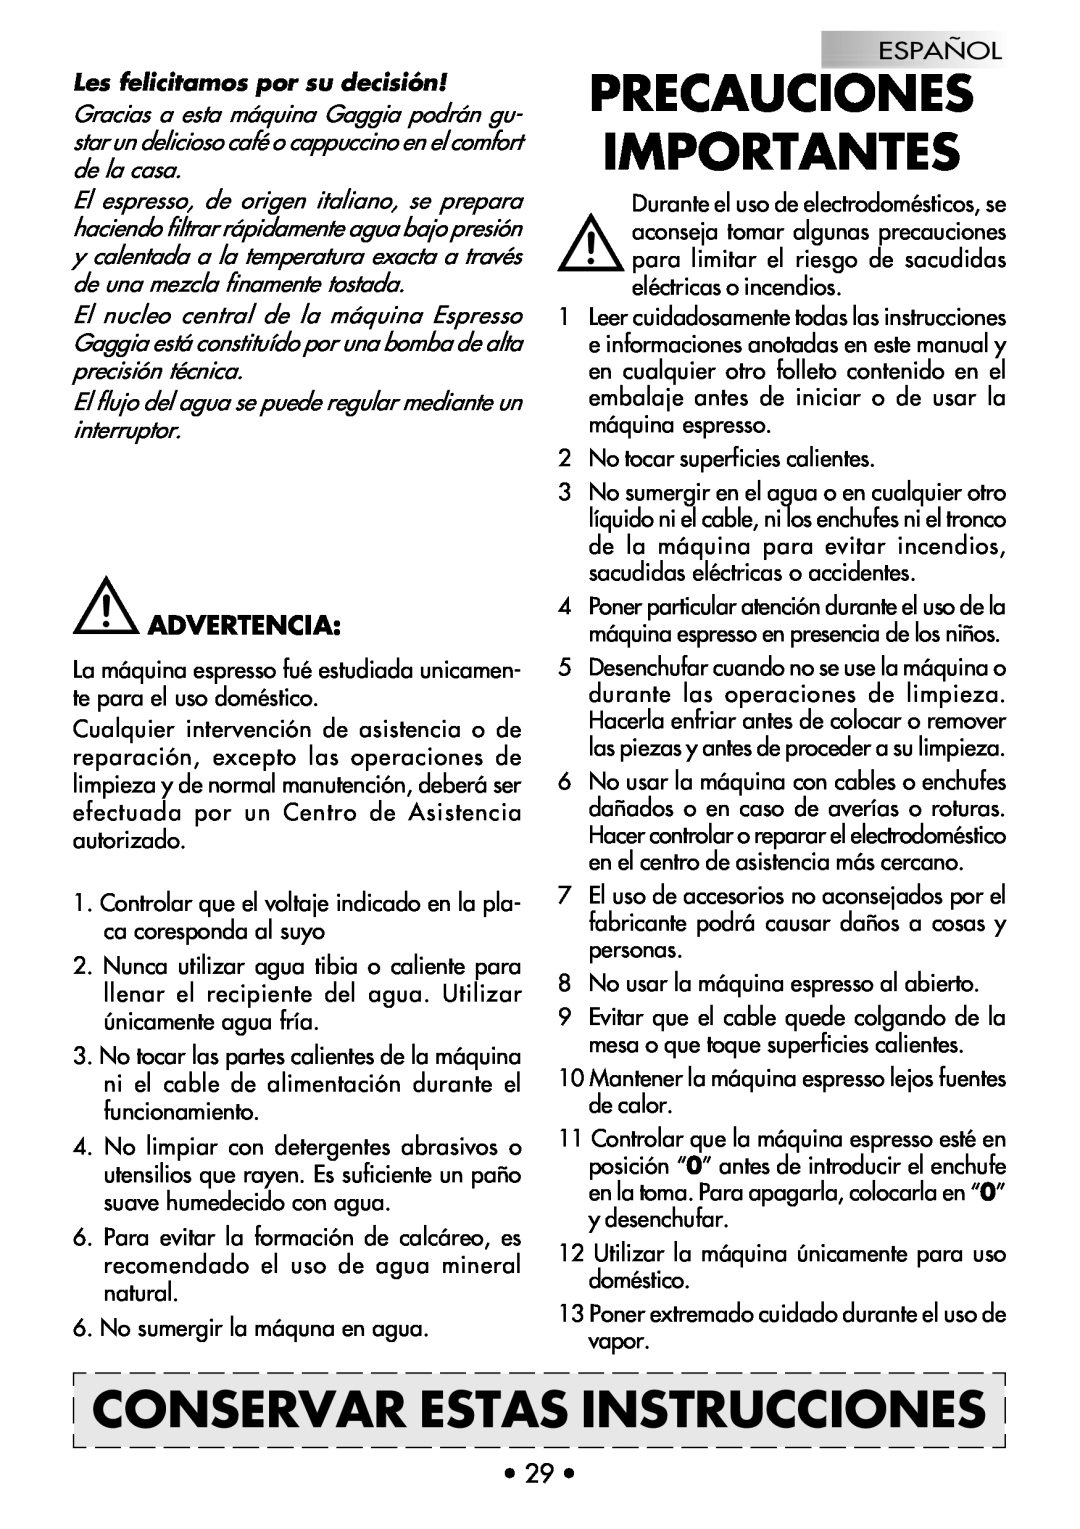 Gaggia COFFEE DELUXE manual Precauciones Importantes, Conservar Estas Instrucciones, Advertencia 